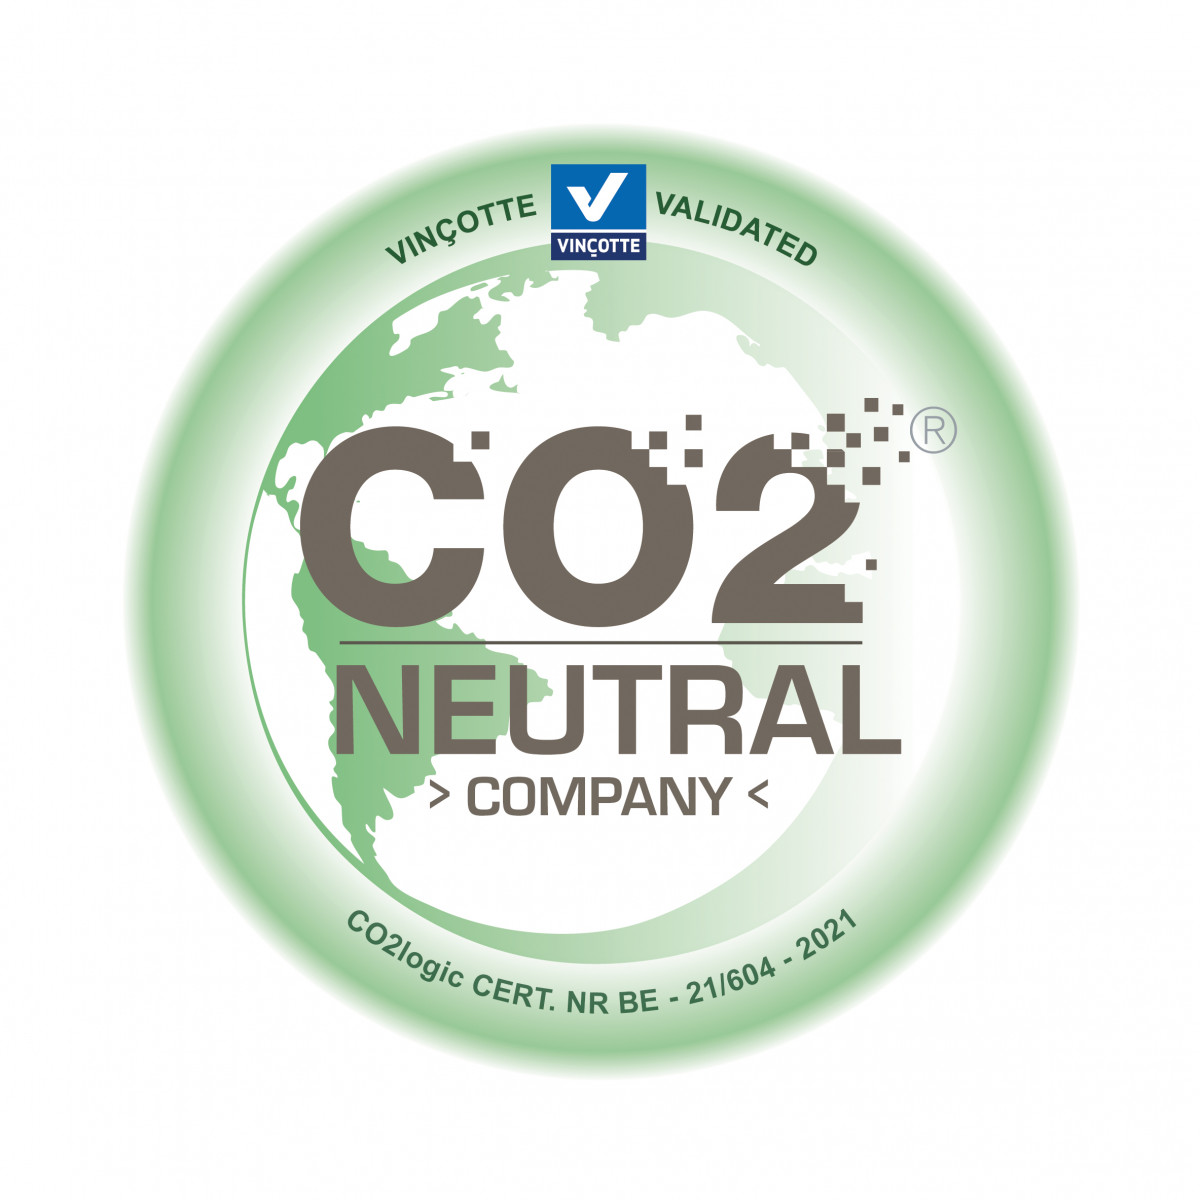 21604_CO2-Neutral label_CO2logic_ATENOR_COMPANY